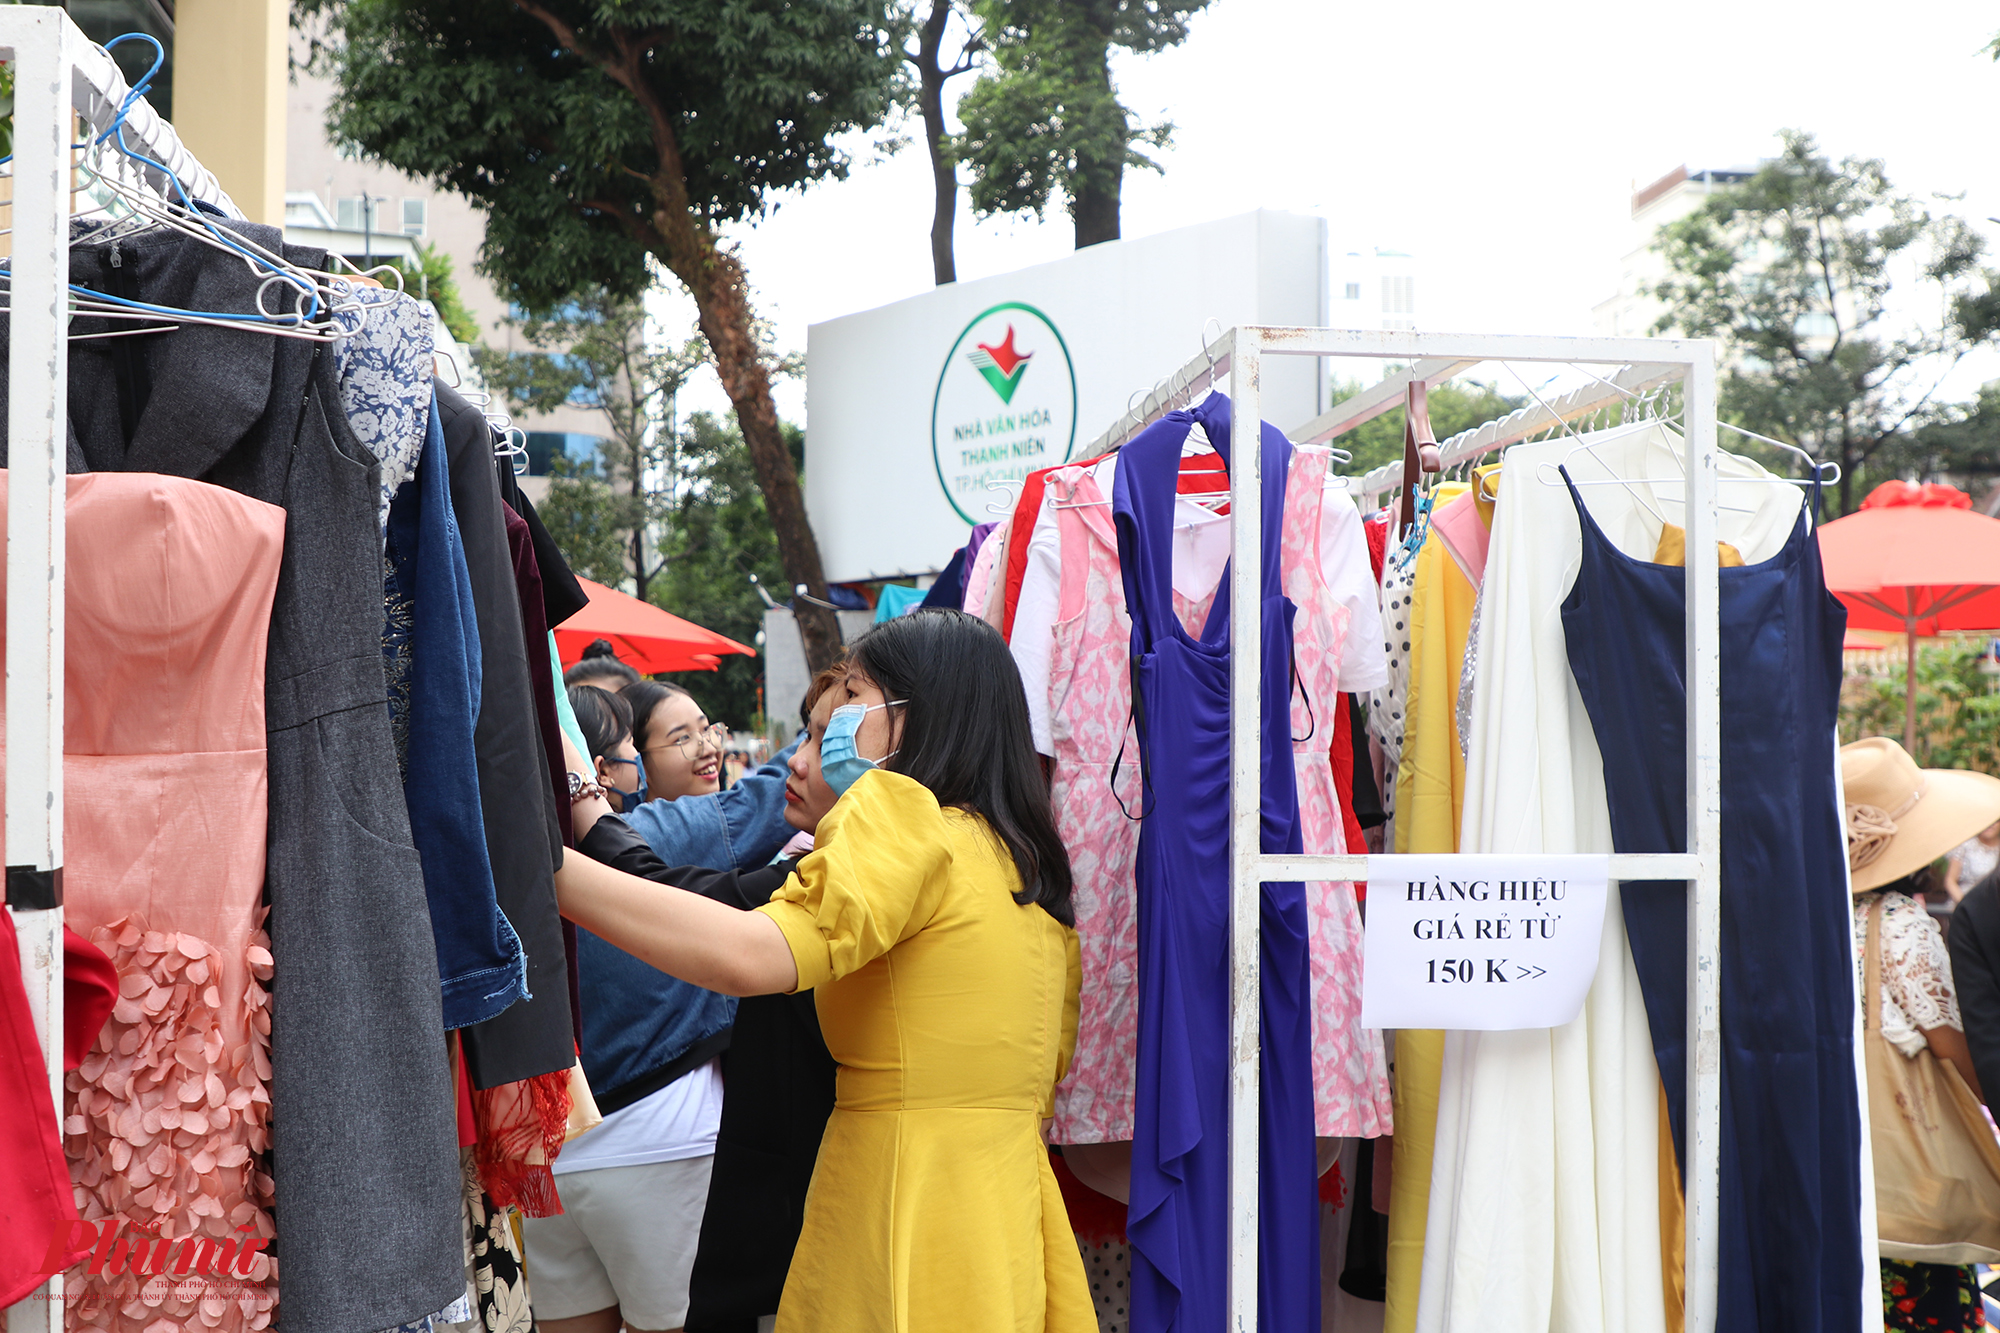 NSƯT Trịnh Kim Chi cho biết chị góp khoảng 100 trang phục, gồm của chị và ông xã. Nữ nghệ sĩ mong sự chung tay này có thể giúp đỡ các bệnh nhi ung thư 